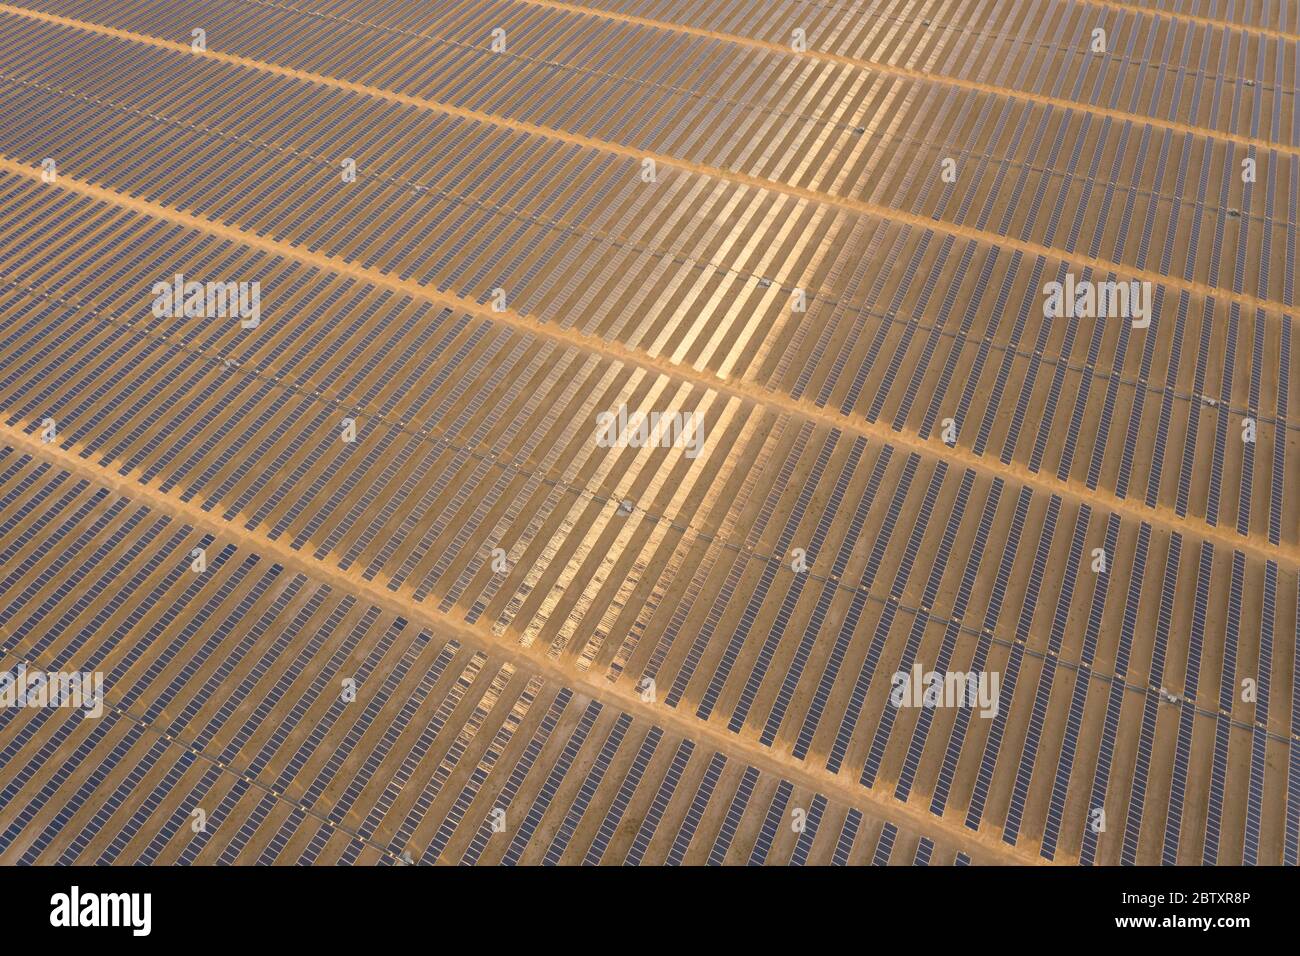 Vue aérienne d'une ferme de panneaux solaires photovoltaïques produisant une énergie renouvelable durable dans une centrale électrique désertique au coucher du soleil. Banque D'Images